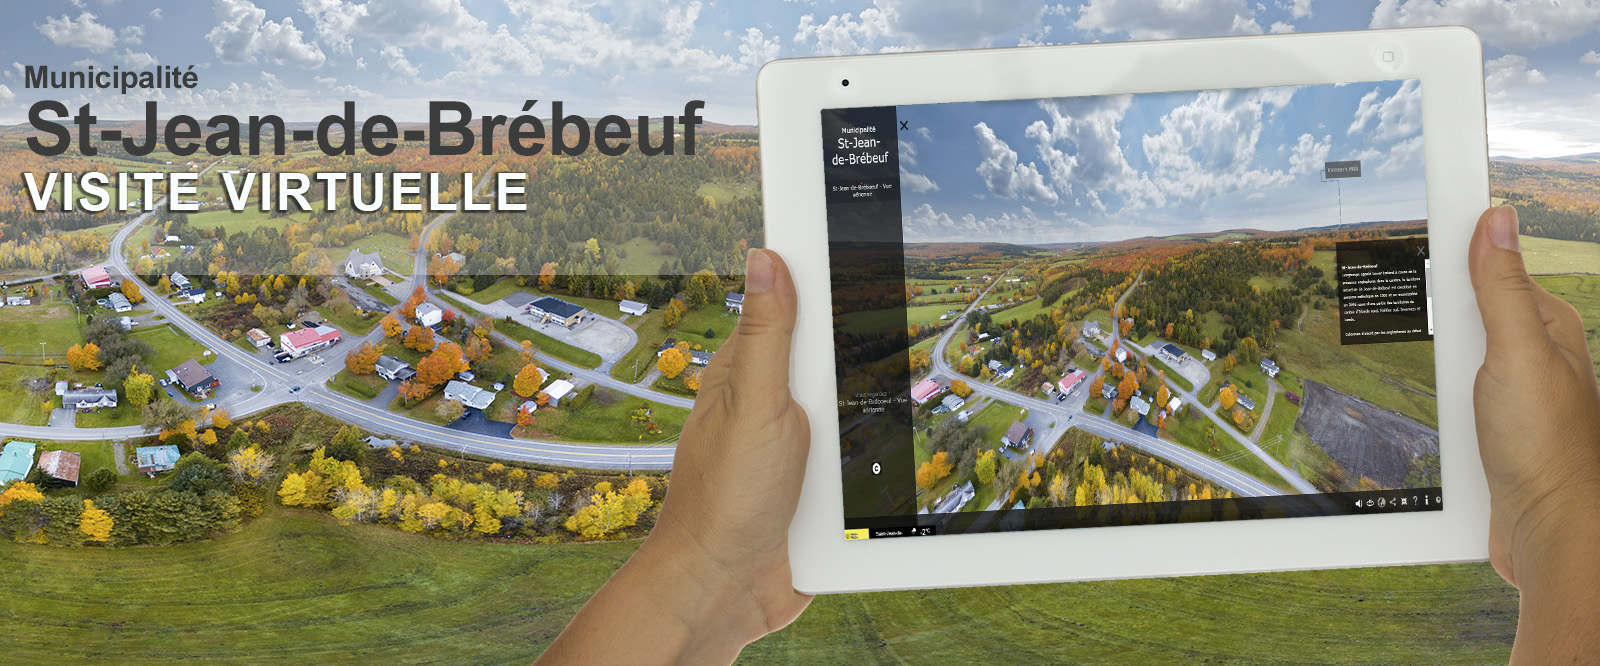 Visite virtuelle 360 degrés St-Jean-de-Brébeuf